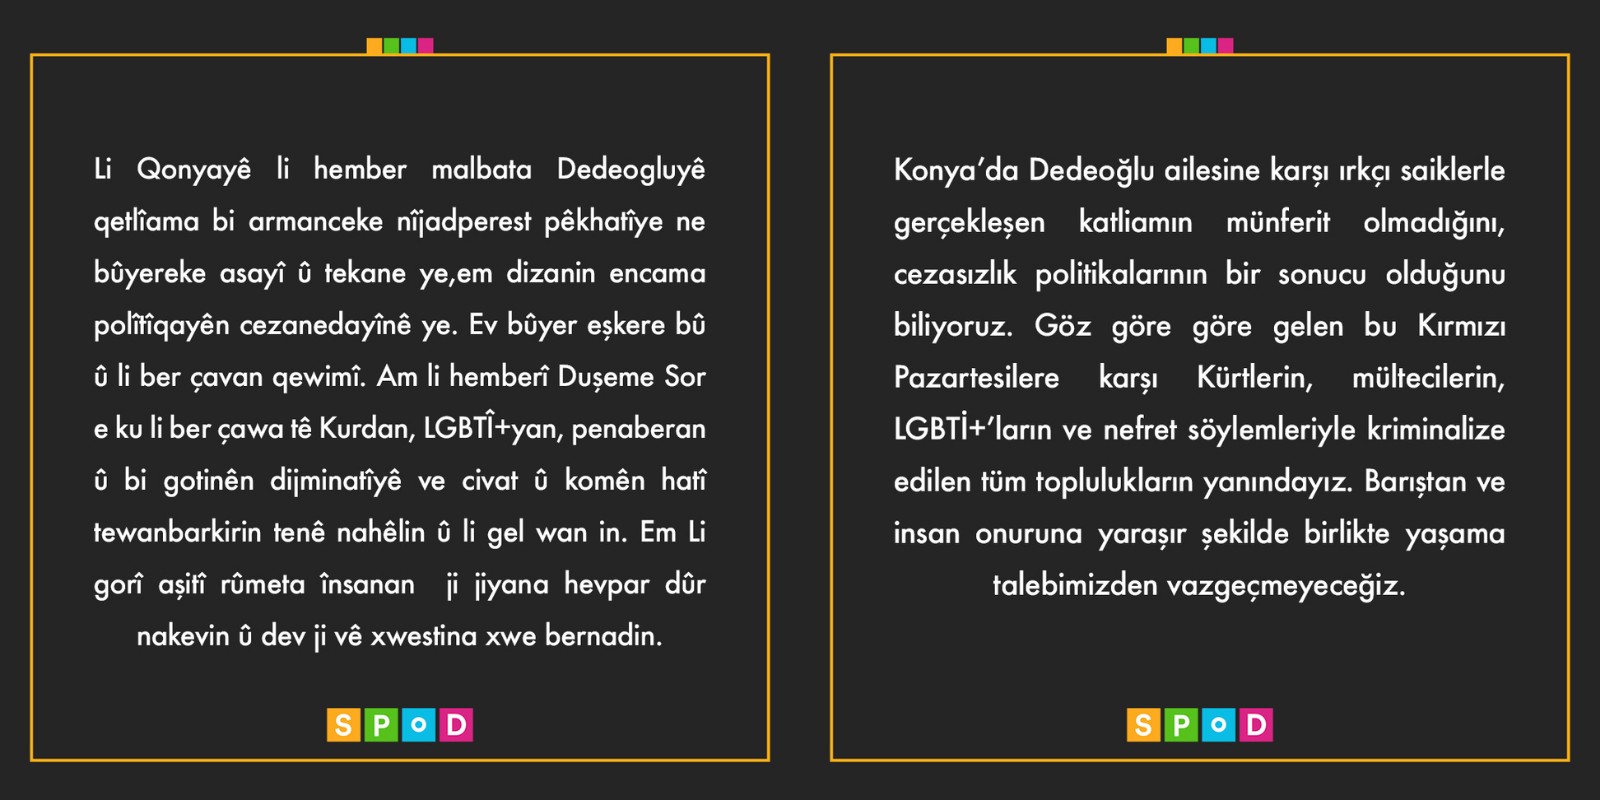 SPoD’tan Konya’daki ırkçı katliama ilişkin açıklama: Cezasızlık politikalarının sonucu Kaos GL - LGBTİ+ Haber Portalı